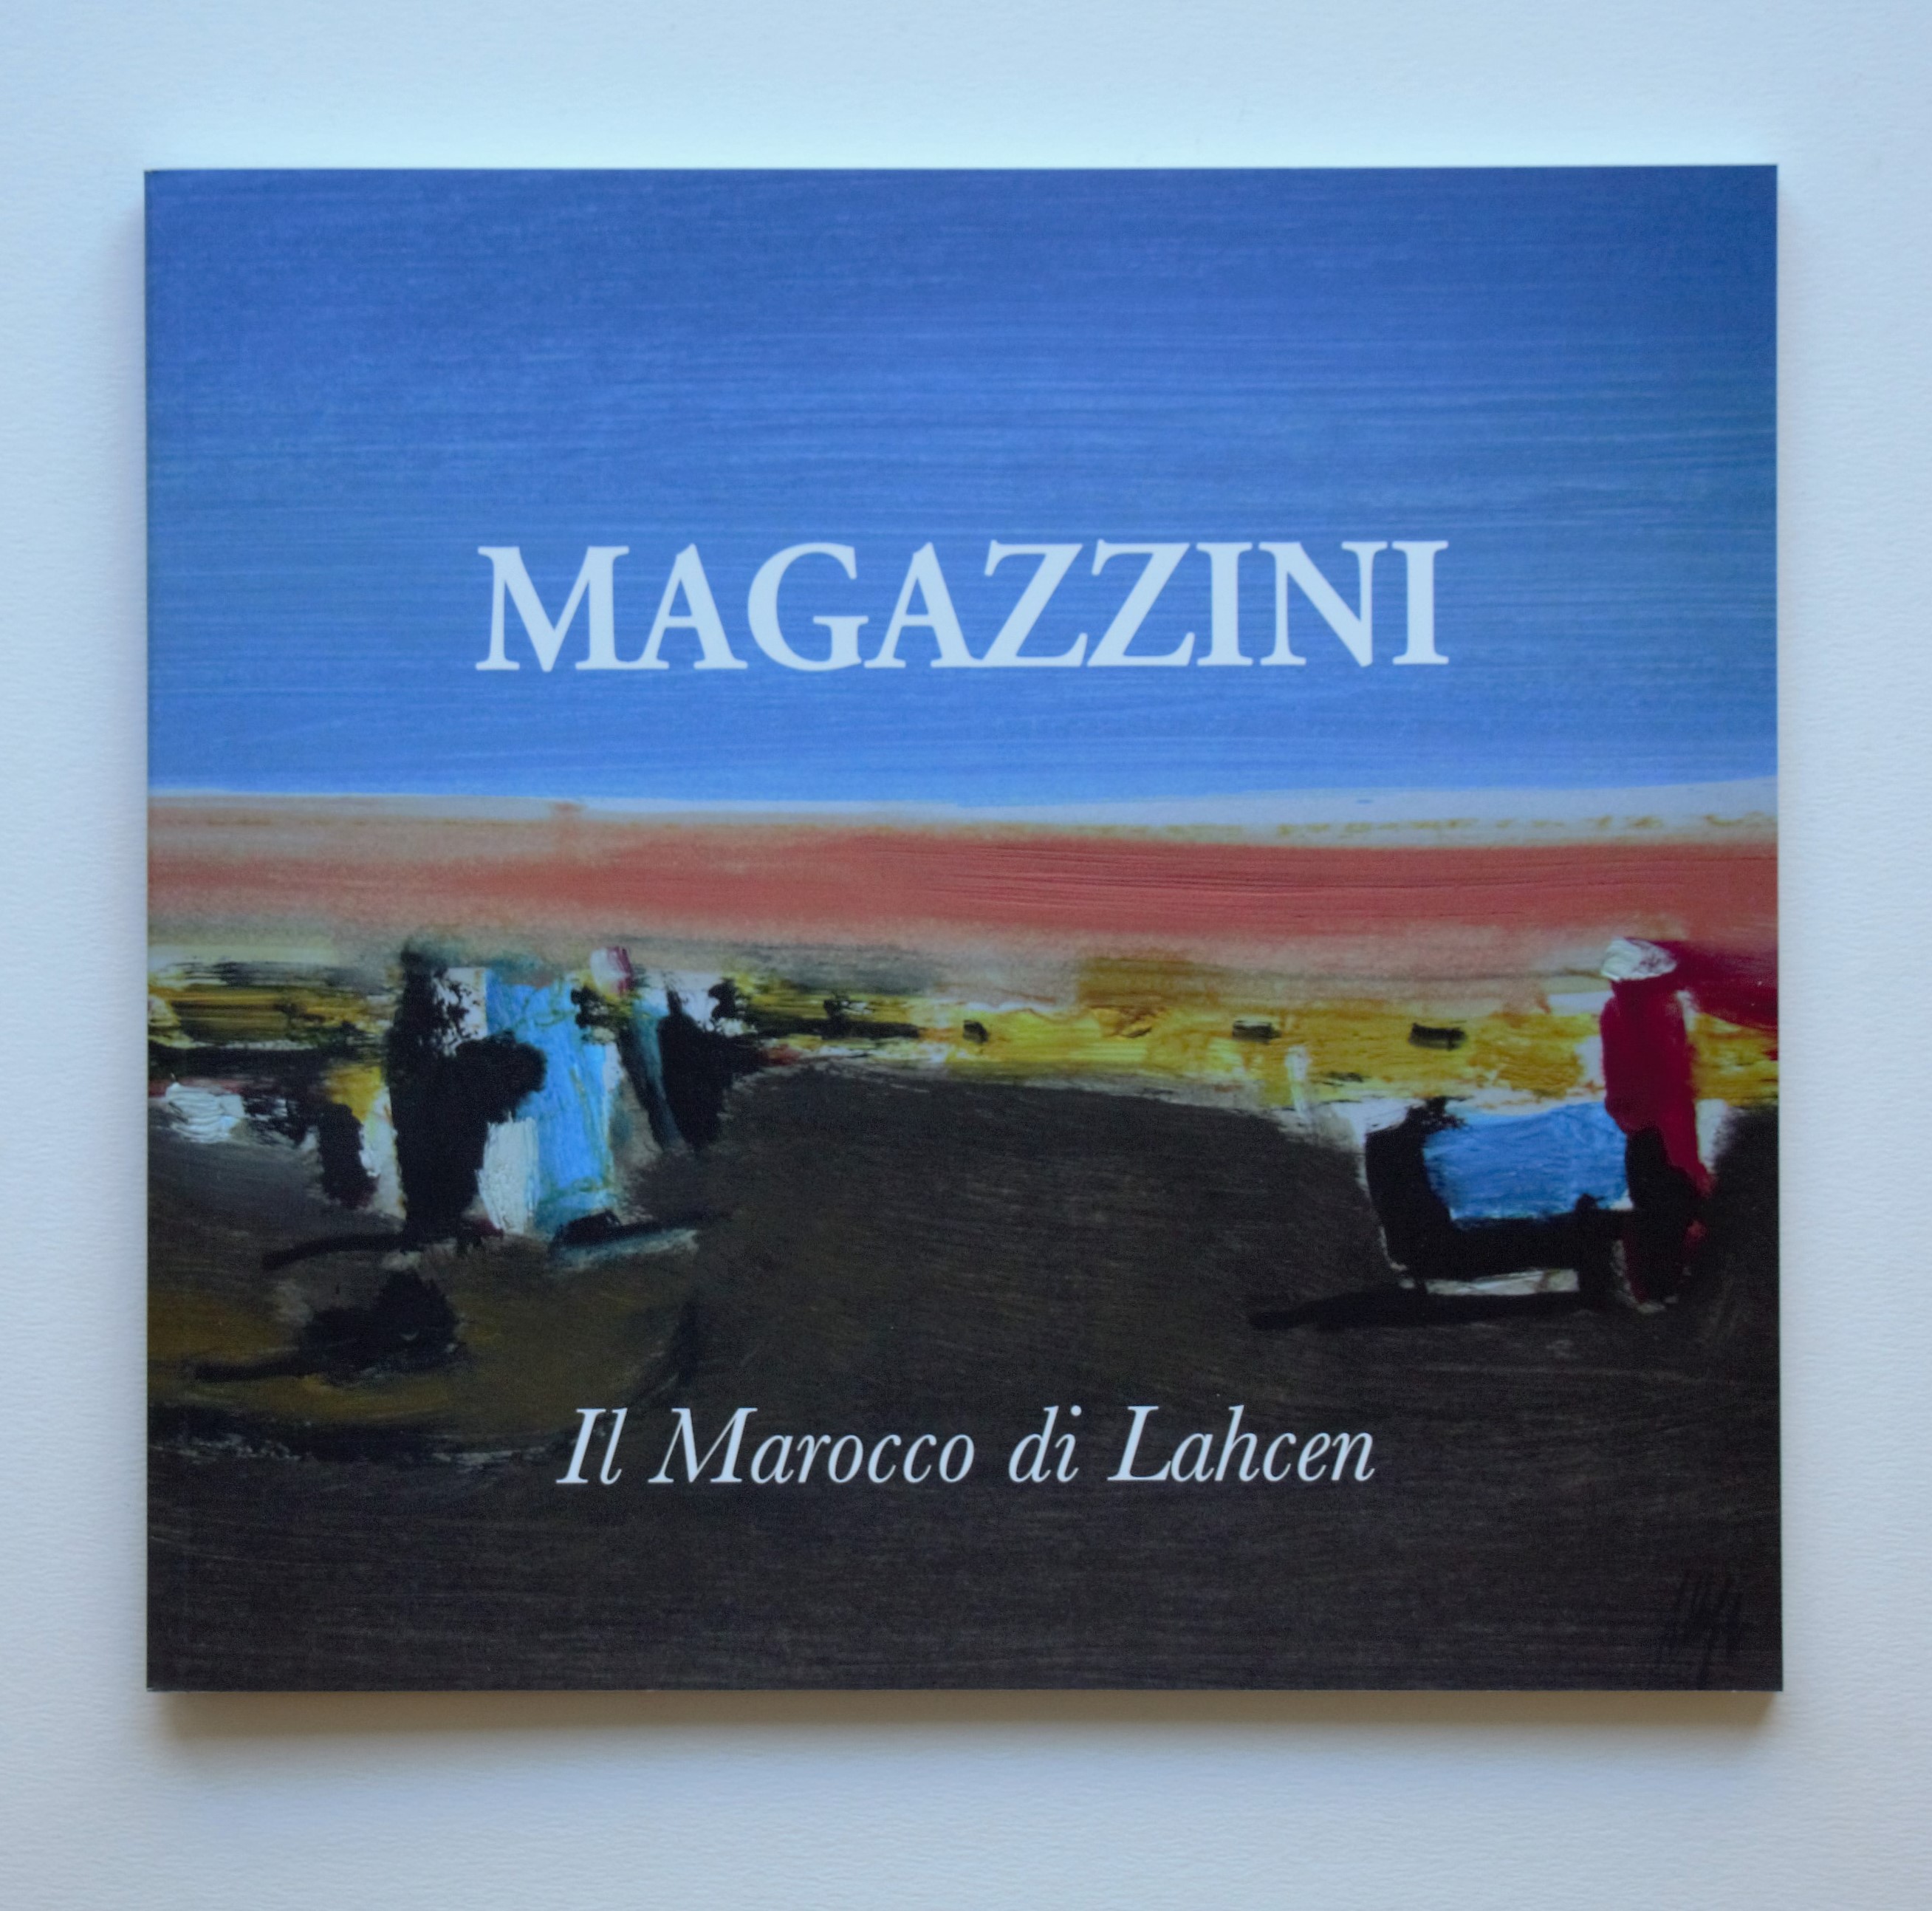 "Il marocco di lahcen" anno 2016 pagine 68 cm. 21,5x23